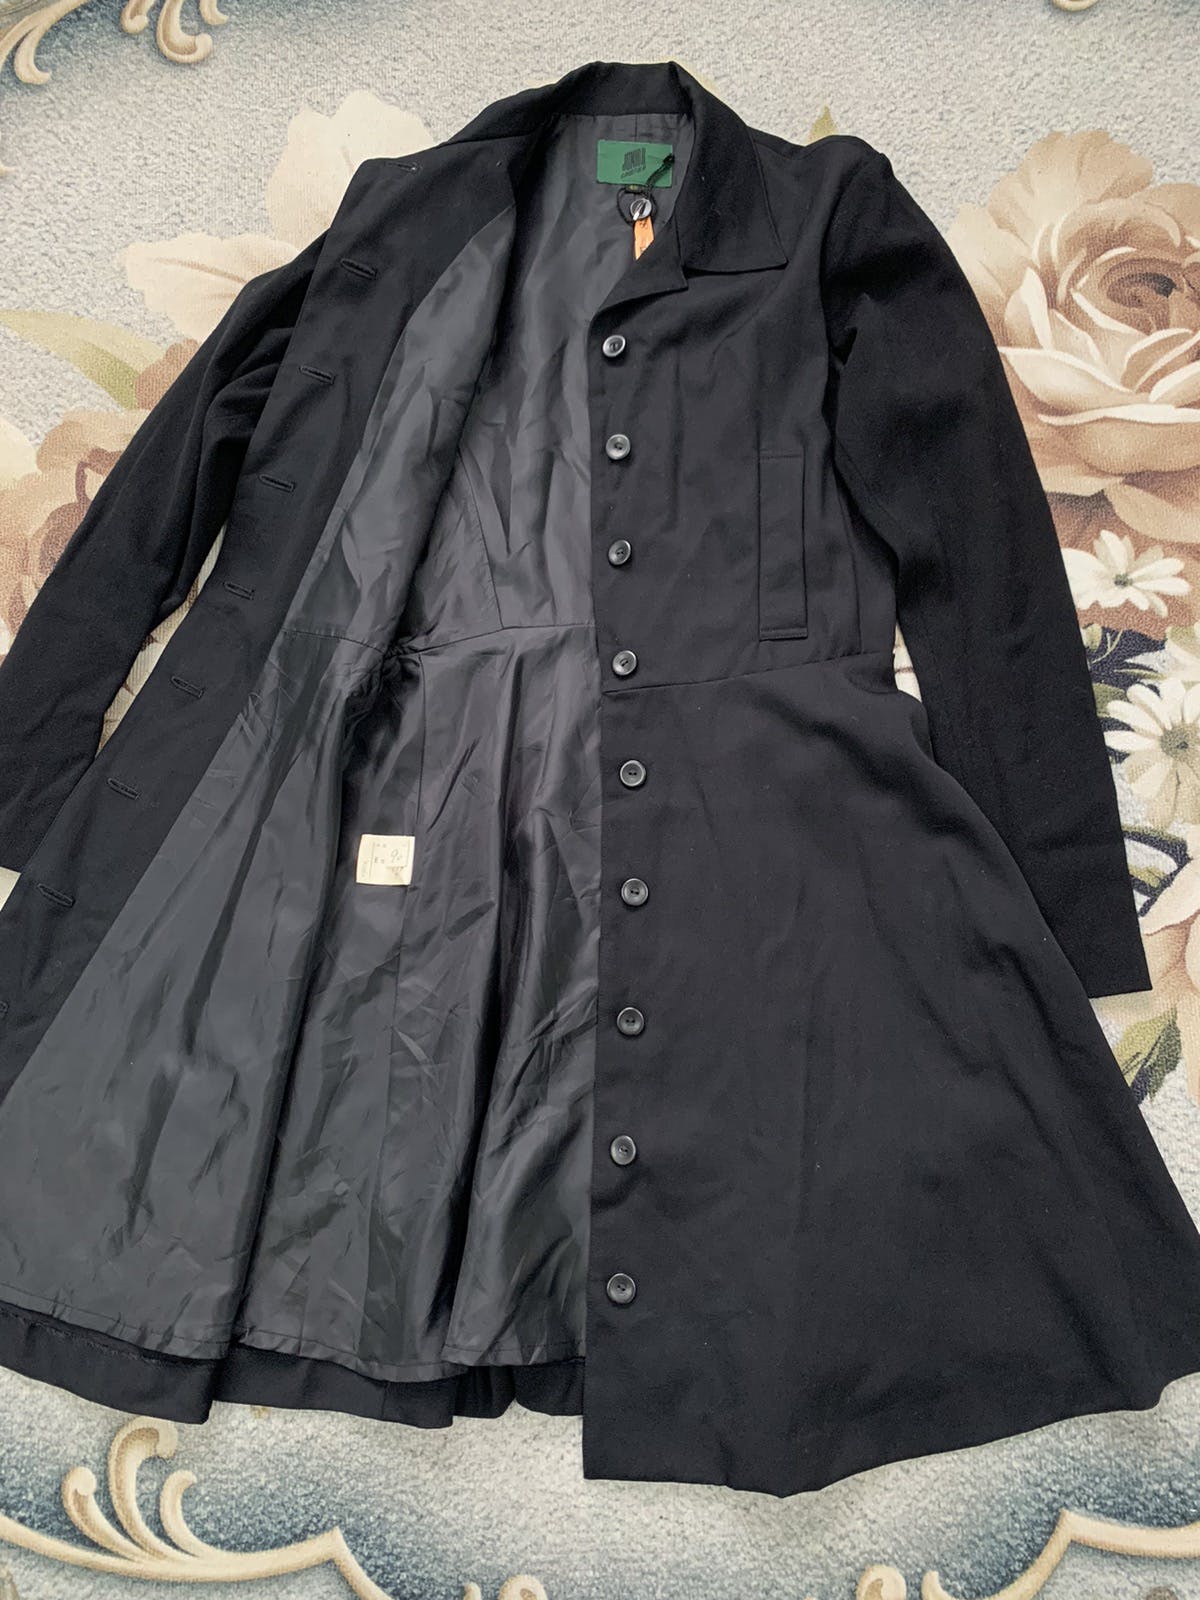 Junior Gaultier Long Coat Made in Japan - 4